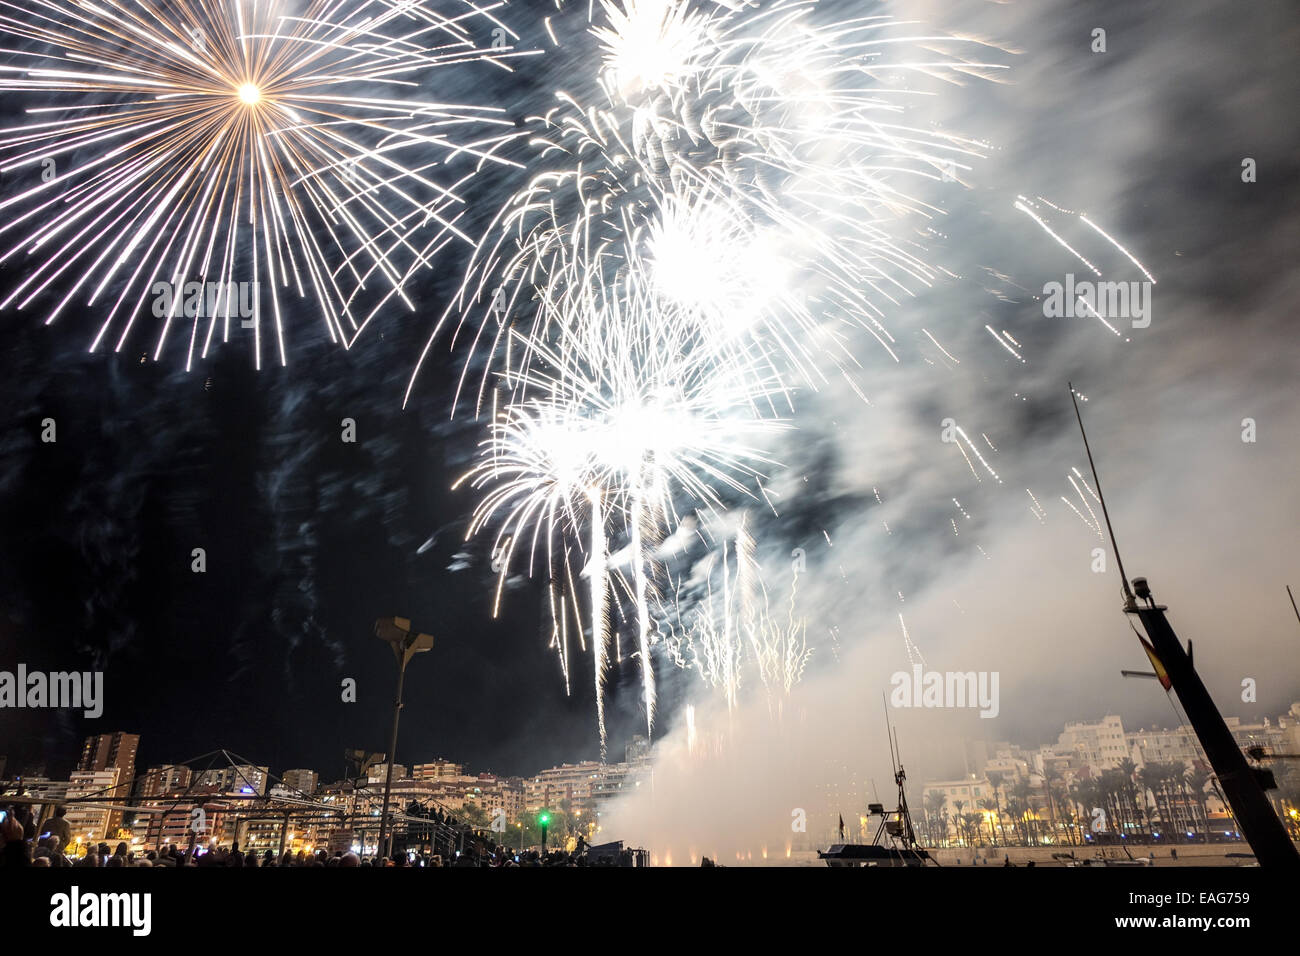 Feuerwerk vom Strand in Benidorm, Spanien Stockfotografie - Alamy